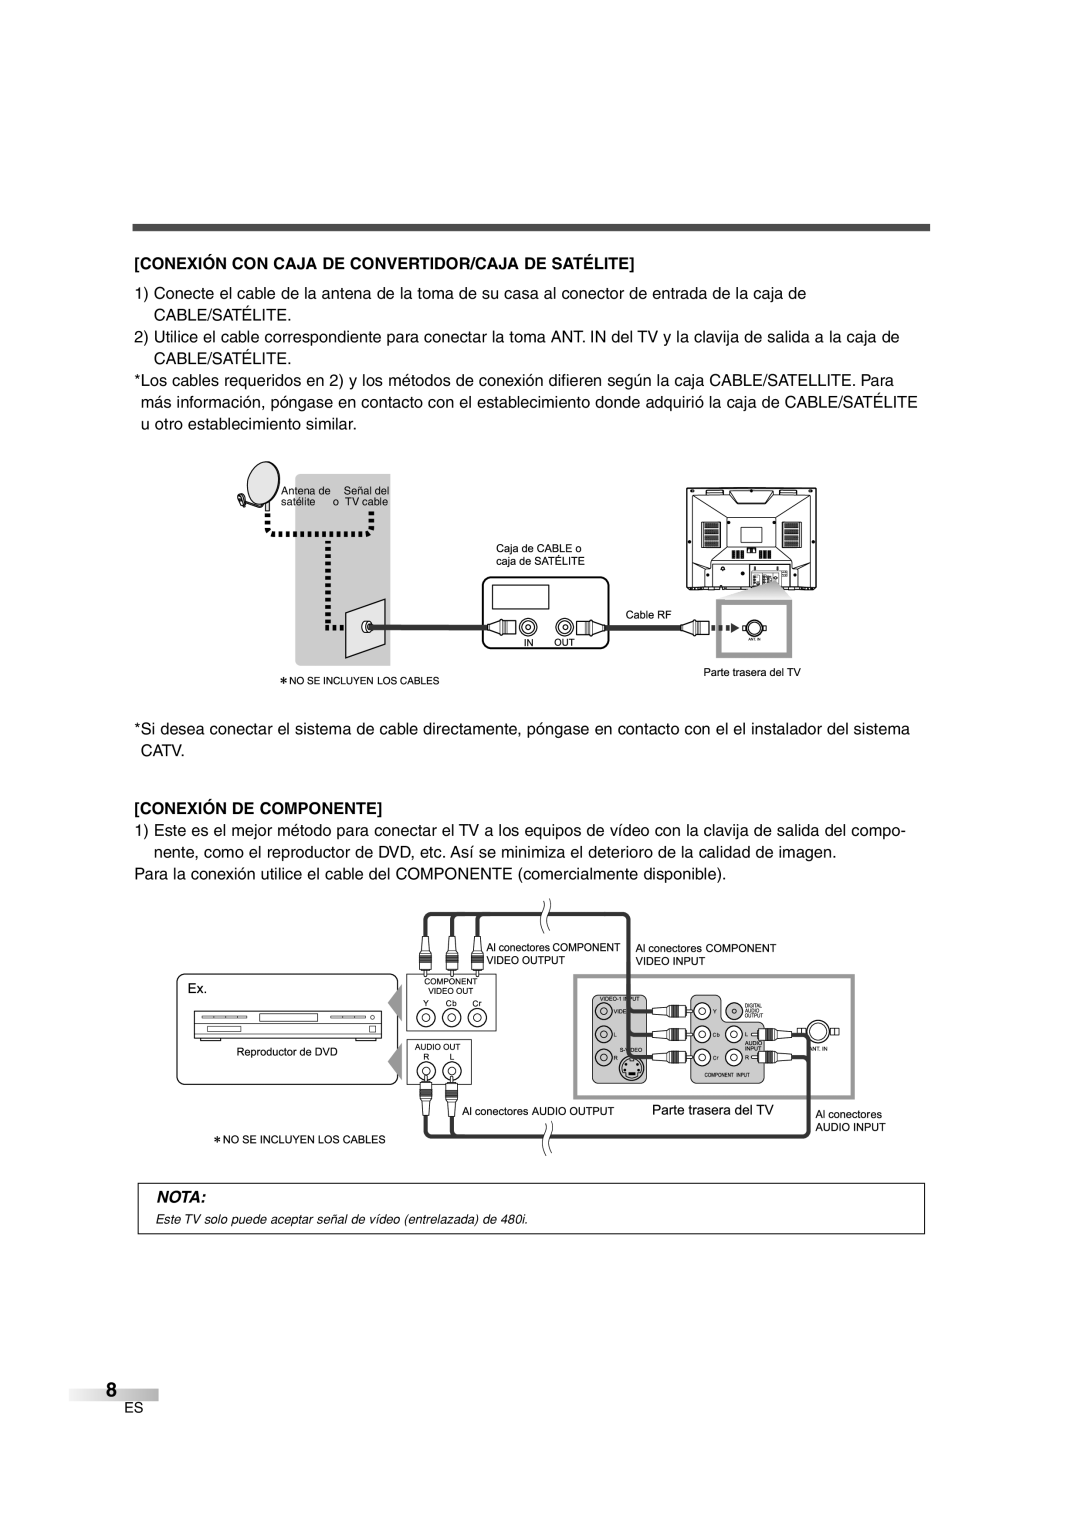 Sylvania SSGF4276 owner manual Conexión Con Caja De Convertidor/Caja De Satélite, Conexión De Componente, Nota 